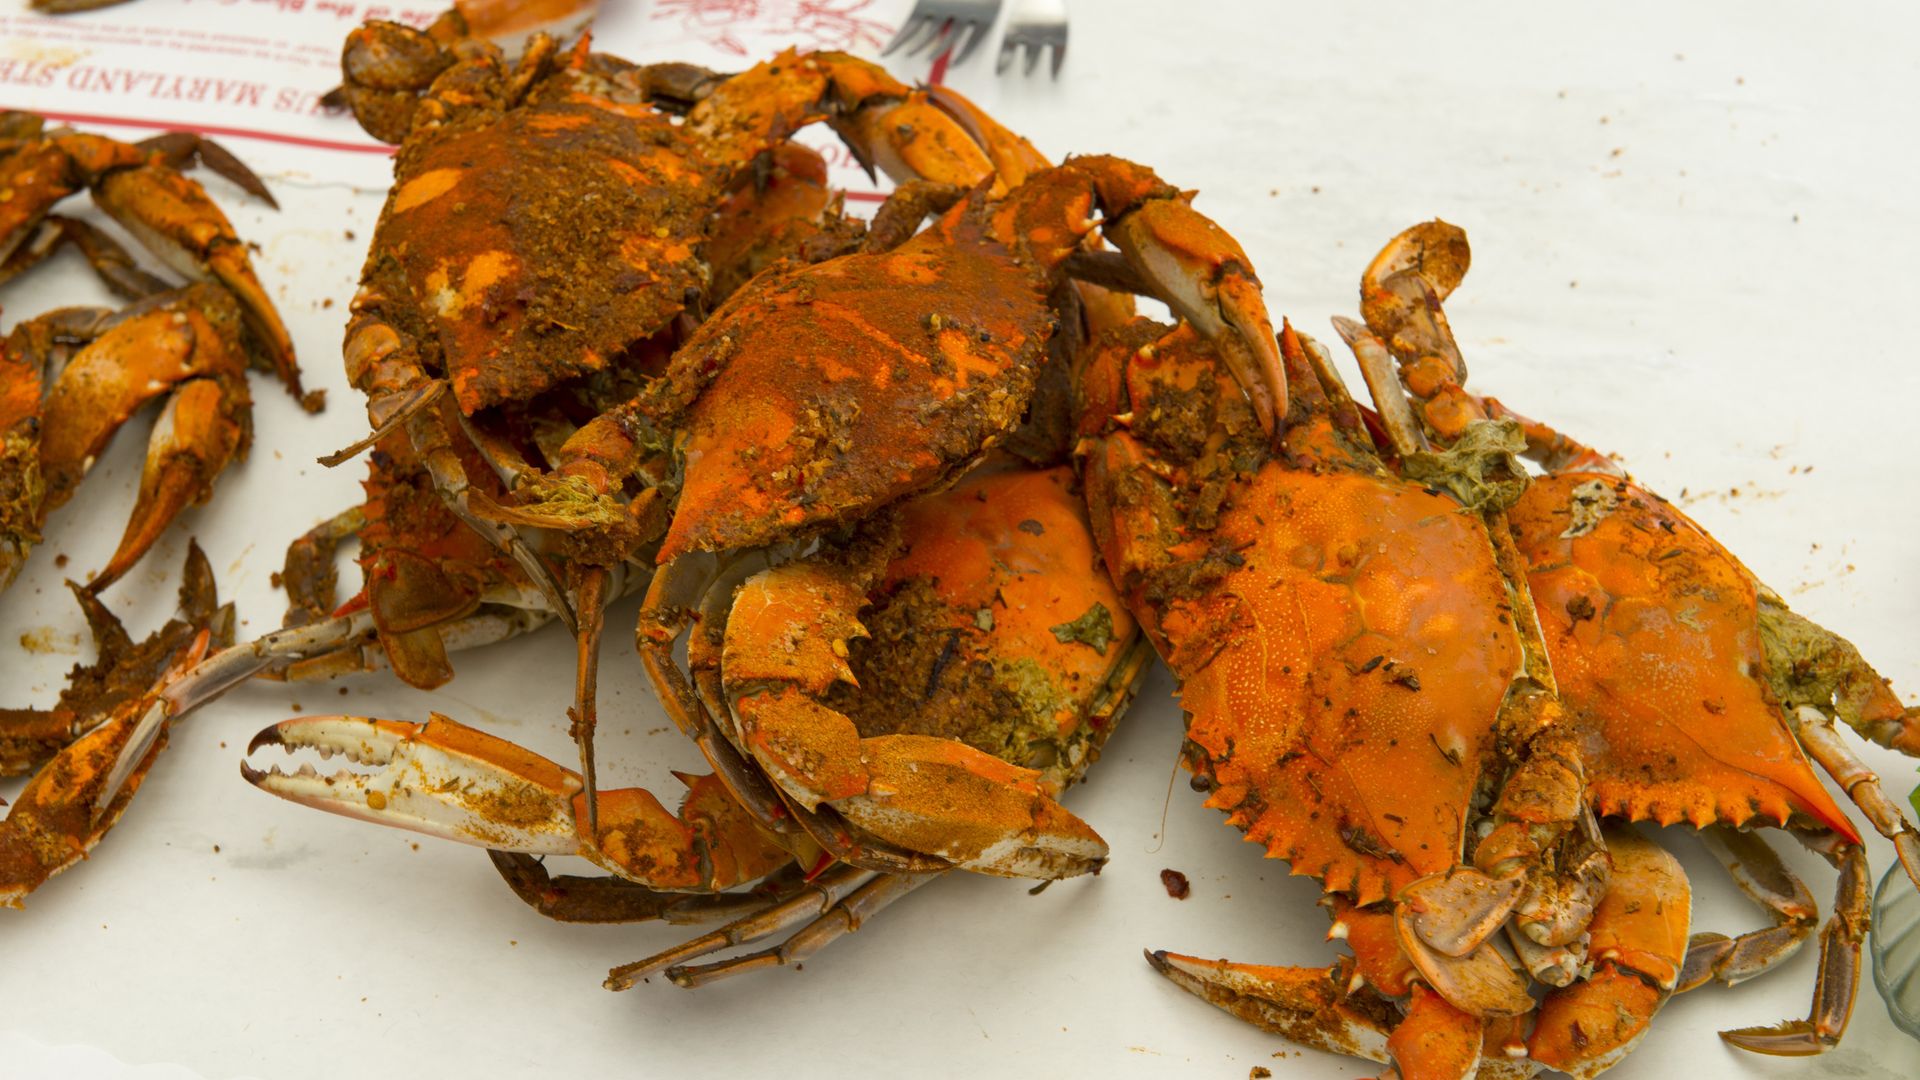 Steamed Chesapeake crabs